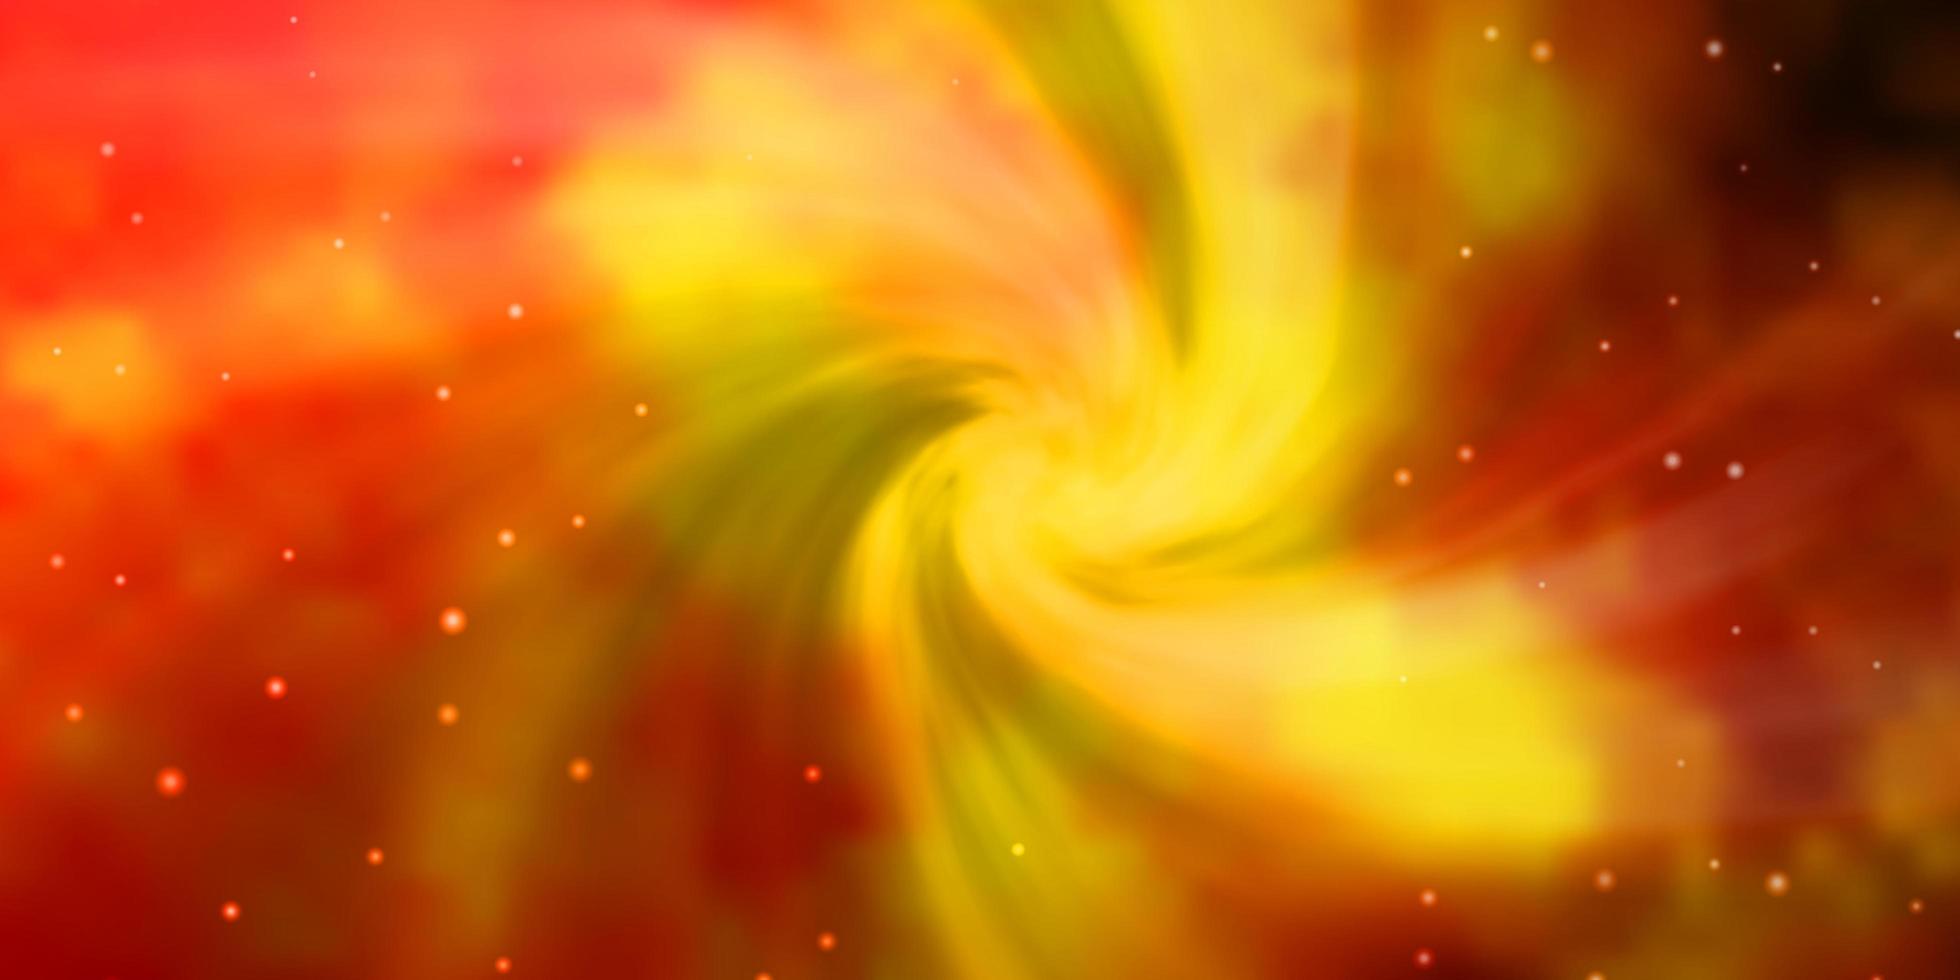 modèle vectoriel rouge et jaune clair avec des étoiles abstraites.